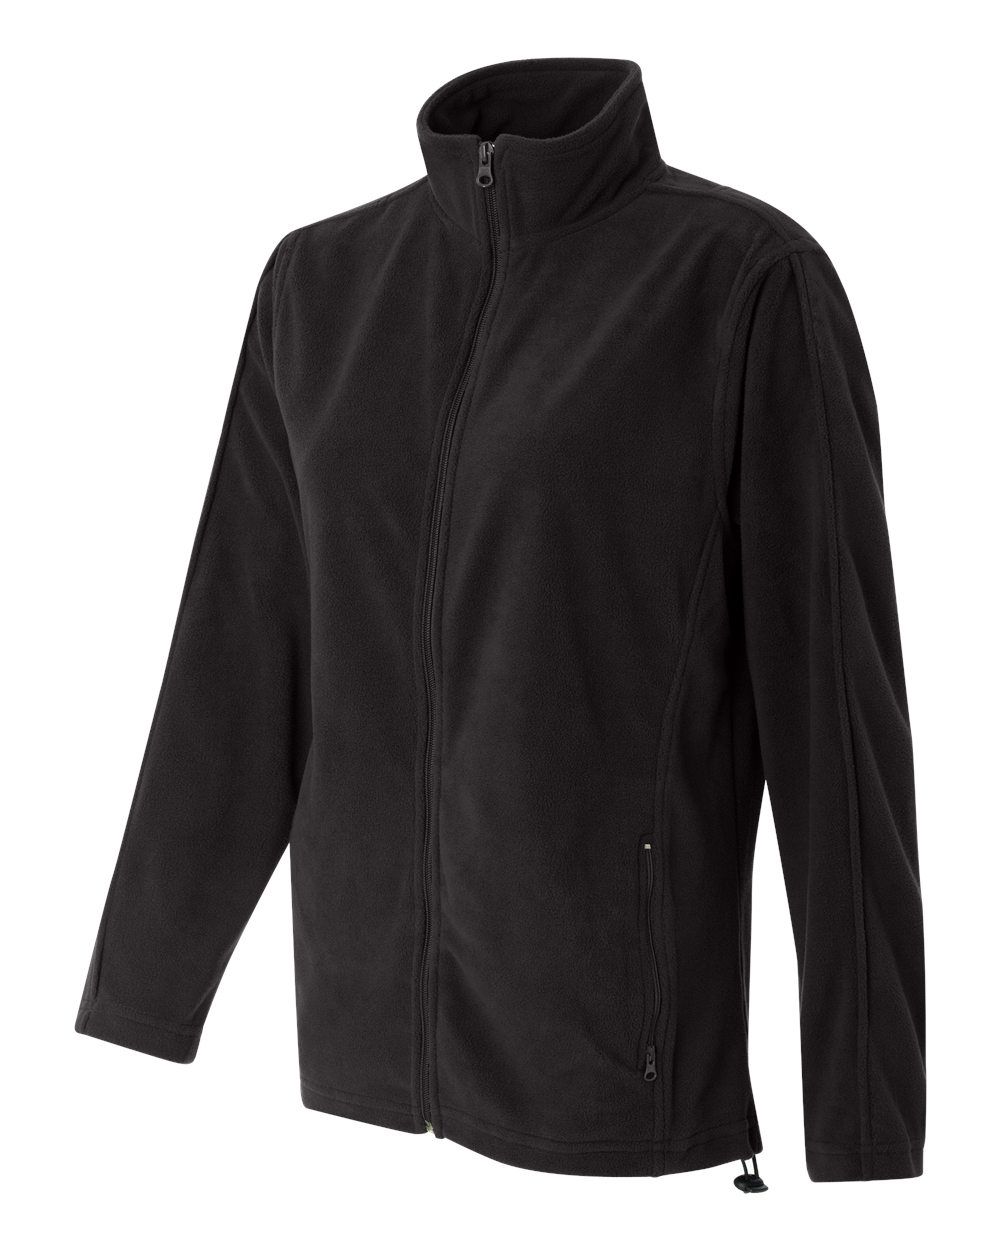 'FeatherLite 5301 Women's Micro Fleece Full-Zip Jacket'